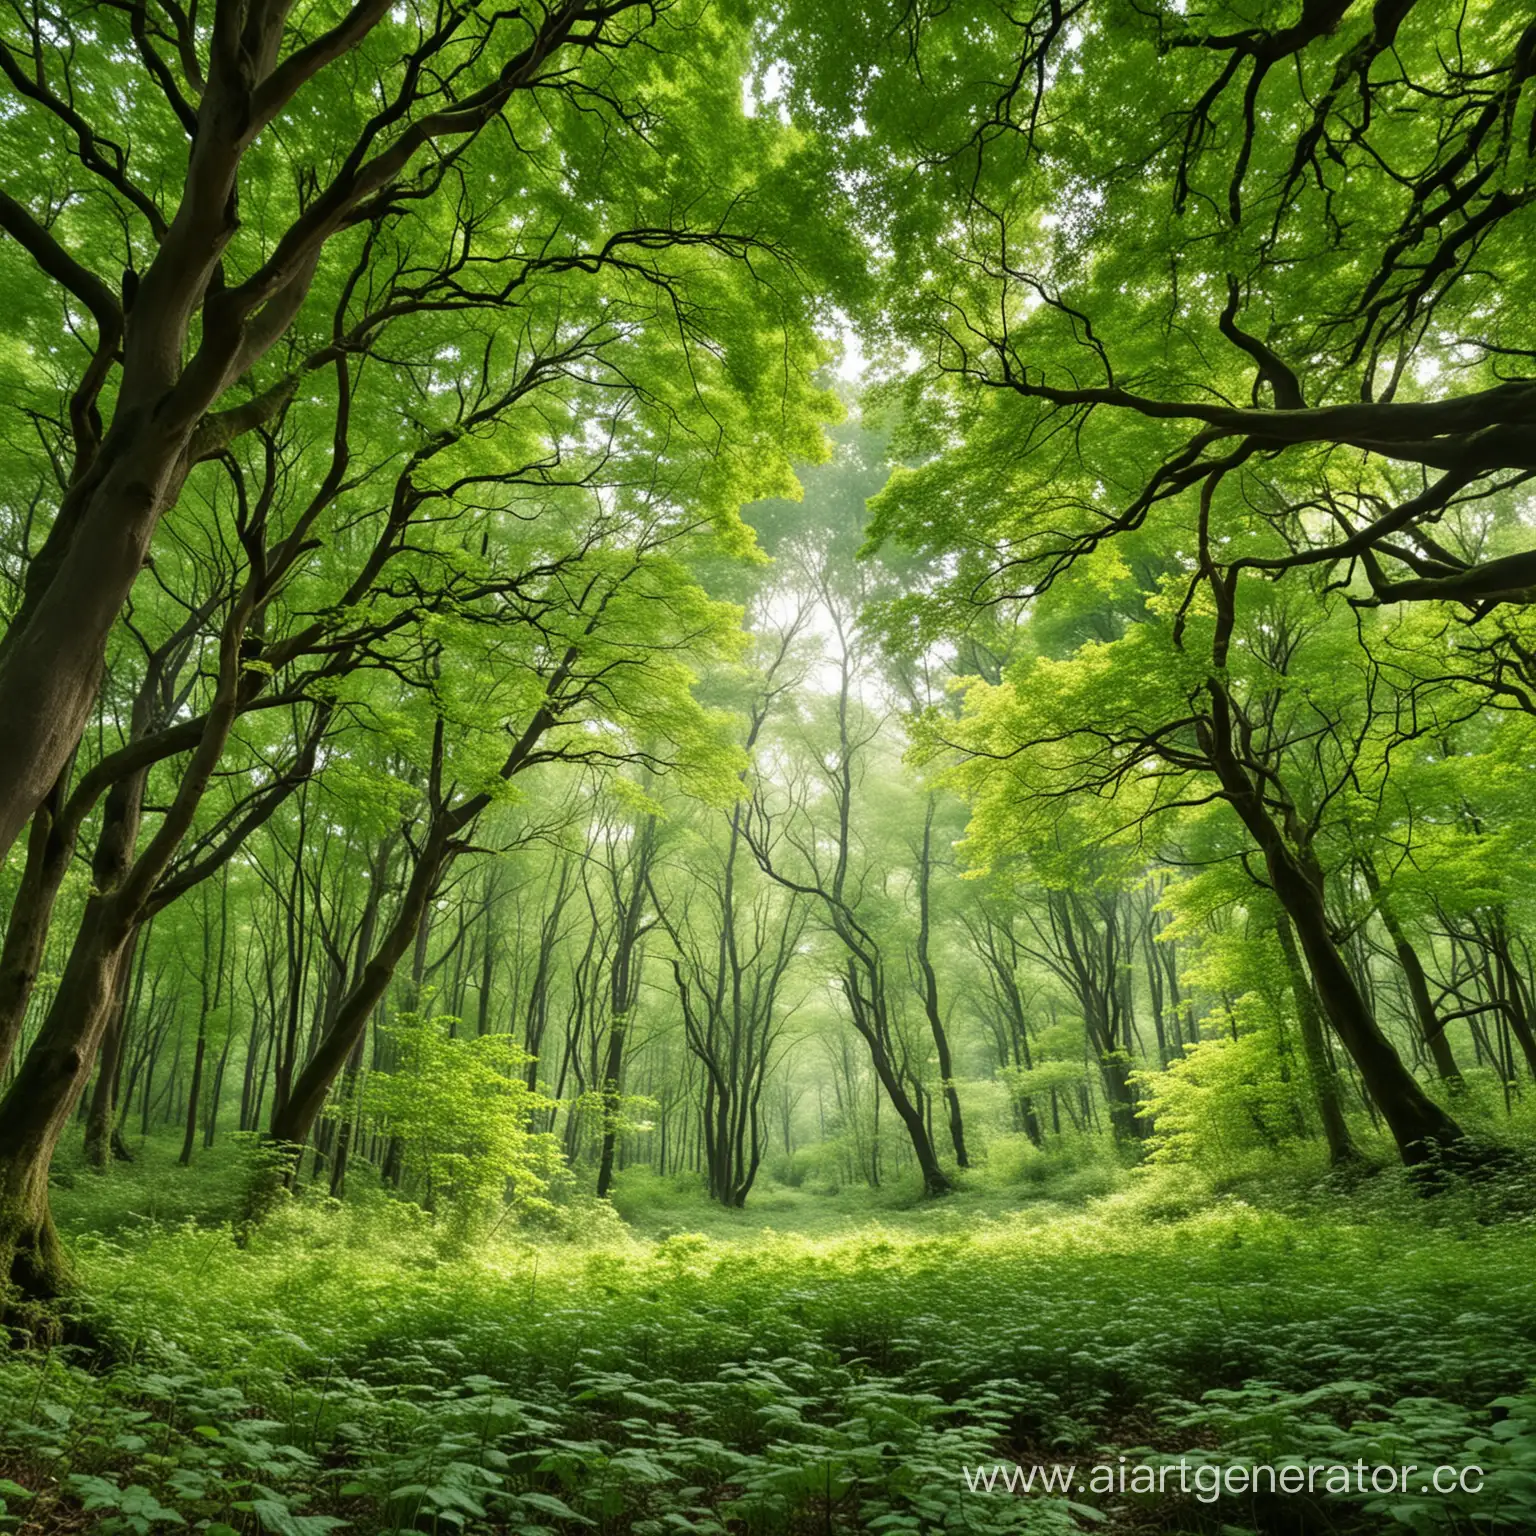 яркий и зеленый лес,большие толстые деревья, листья, вид изнутри леса